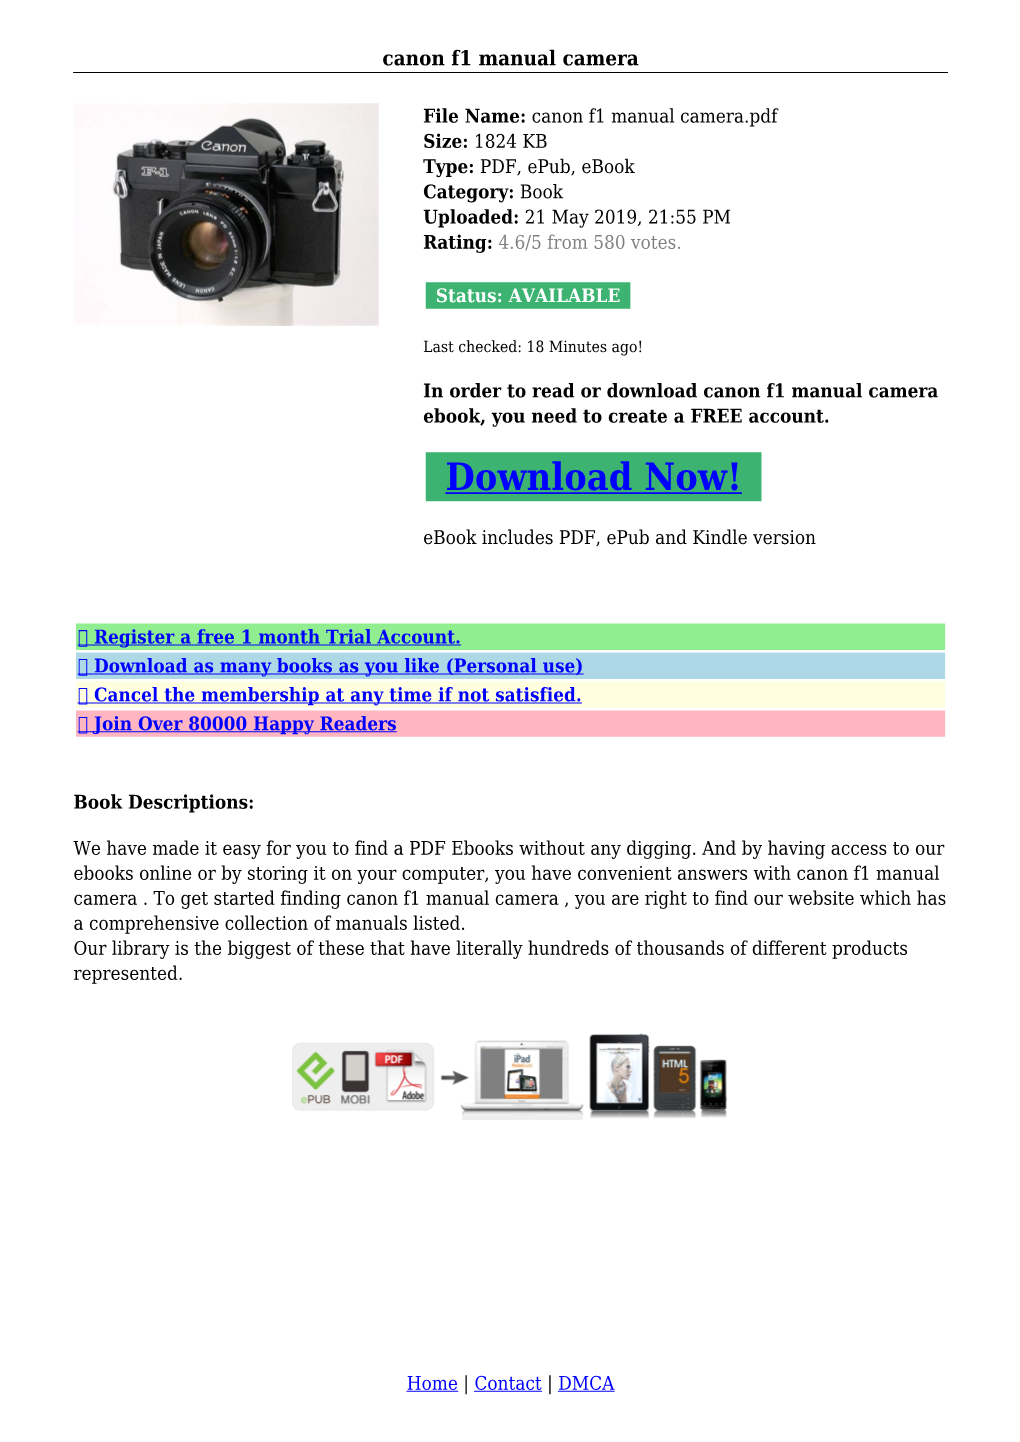 Canon F1 Manual Camera